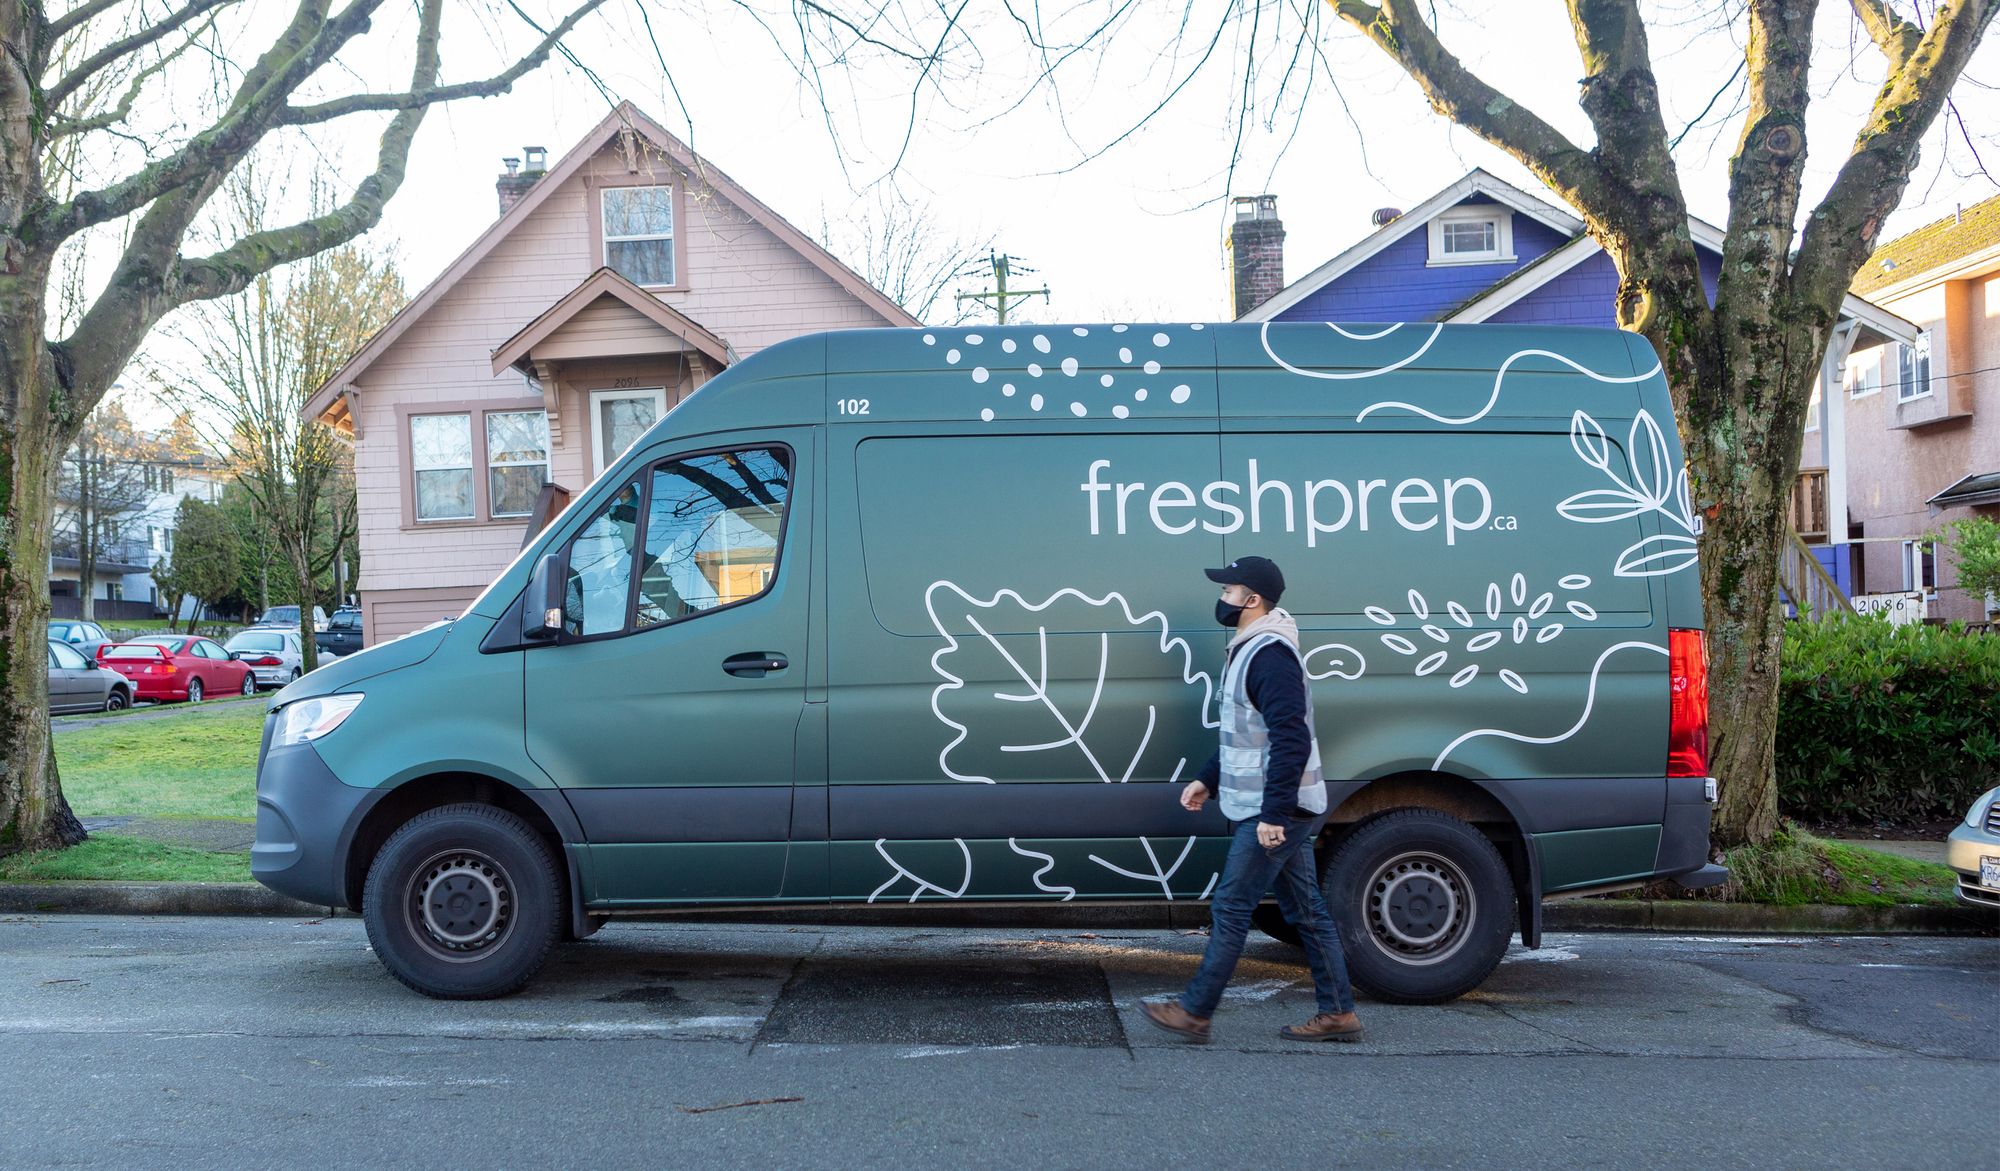 A Fresh Prep delivery van